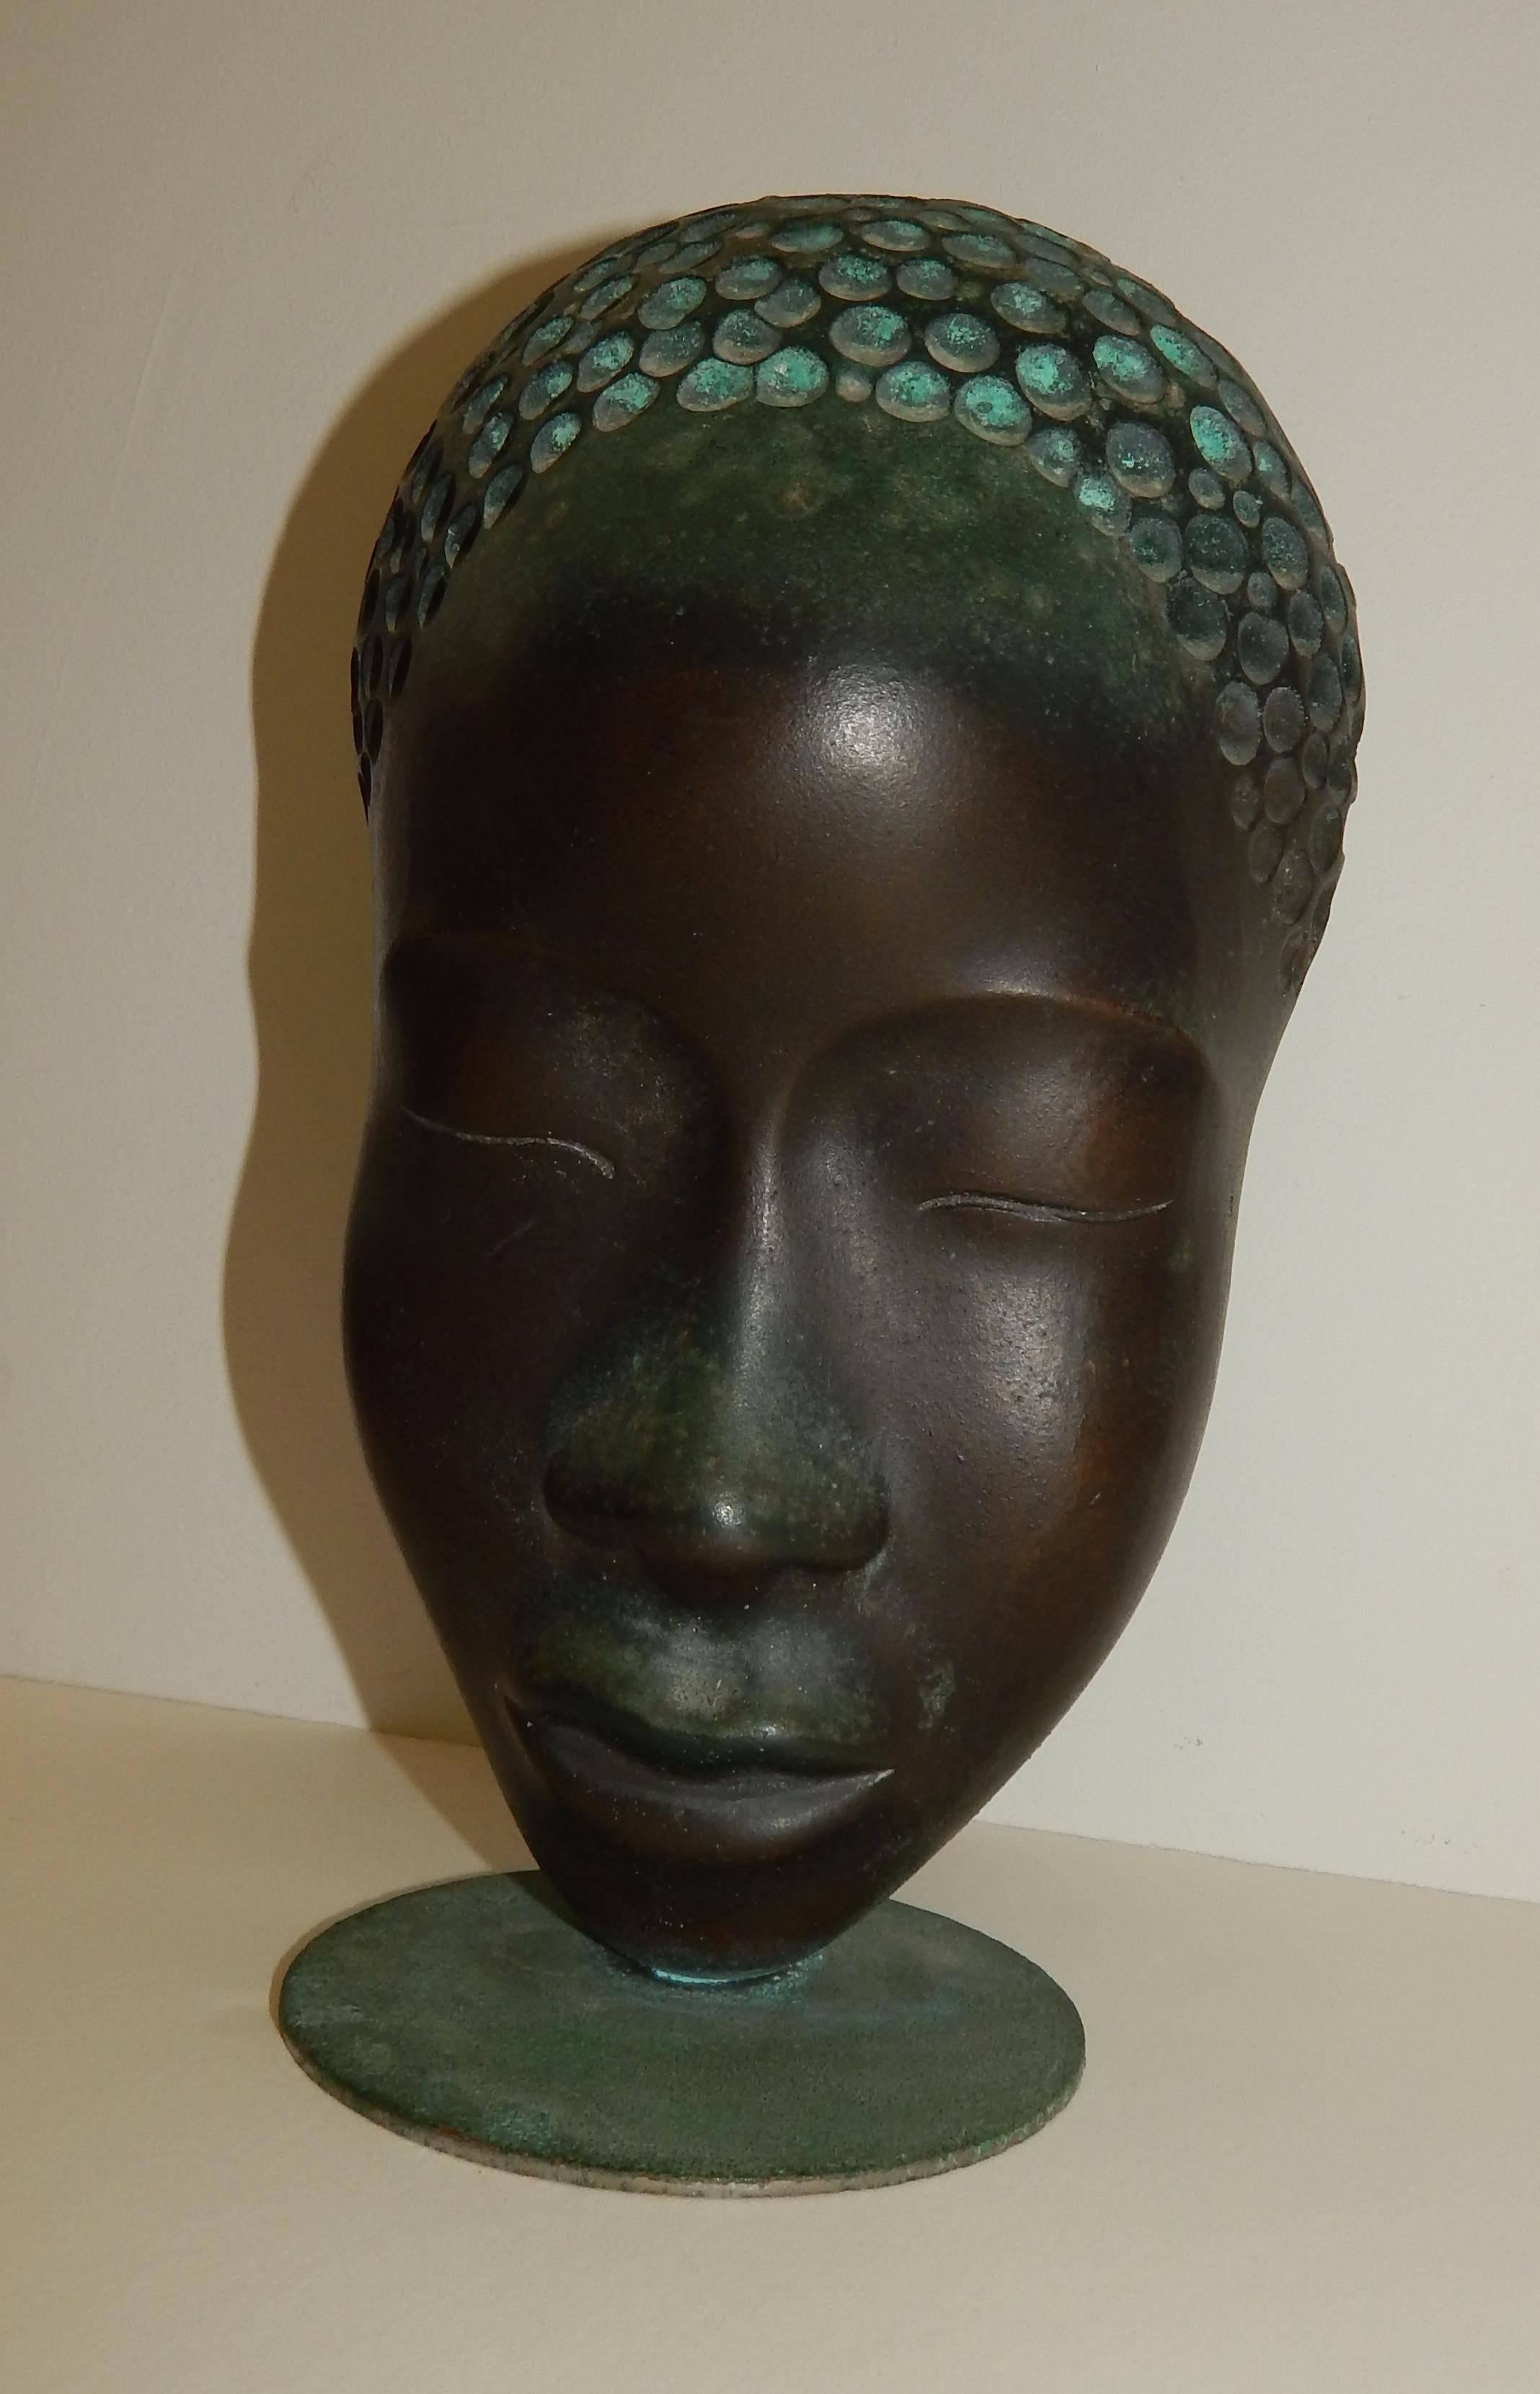 Hagenauer Afrikanerin, Porträt in Bronze. Schöne Patina.
Schwarzes Thema. Gekennzeichnet mit Atelier Hagenauer Wien, Made in Austria.
Maße: 9